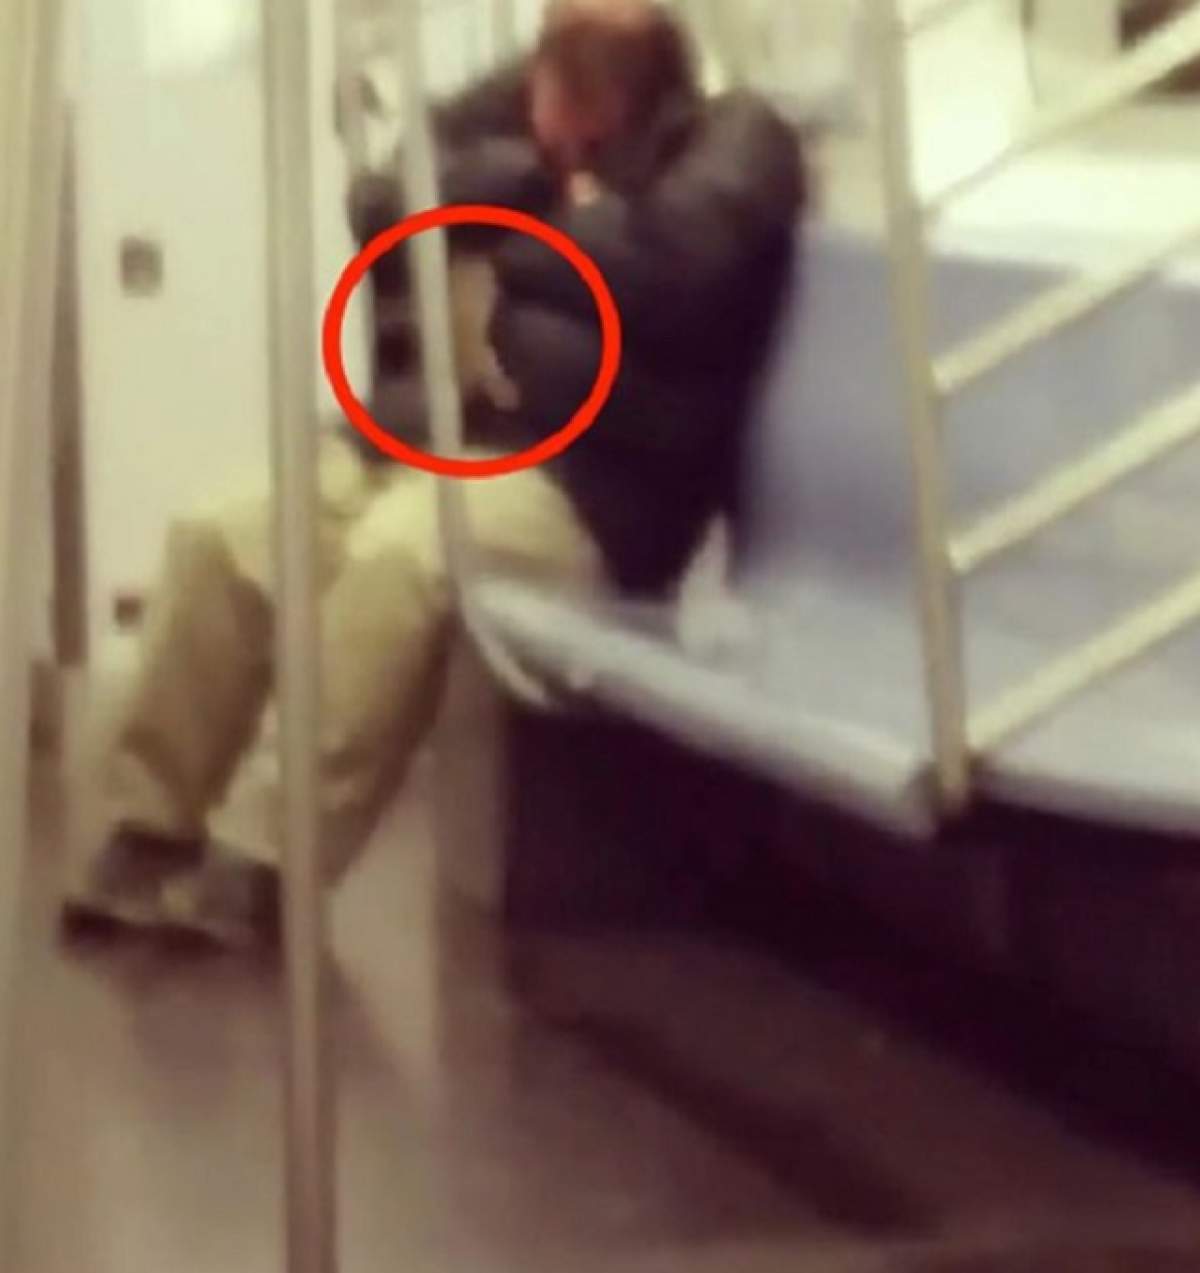 VIDEO / Motivul pentru care NU TREBUIE să aţipeşti în metrou! Ce a păţit bărbatul din imagine a devenit viral!